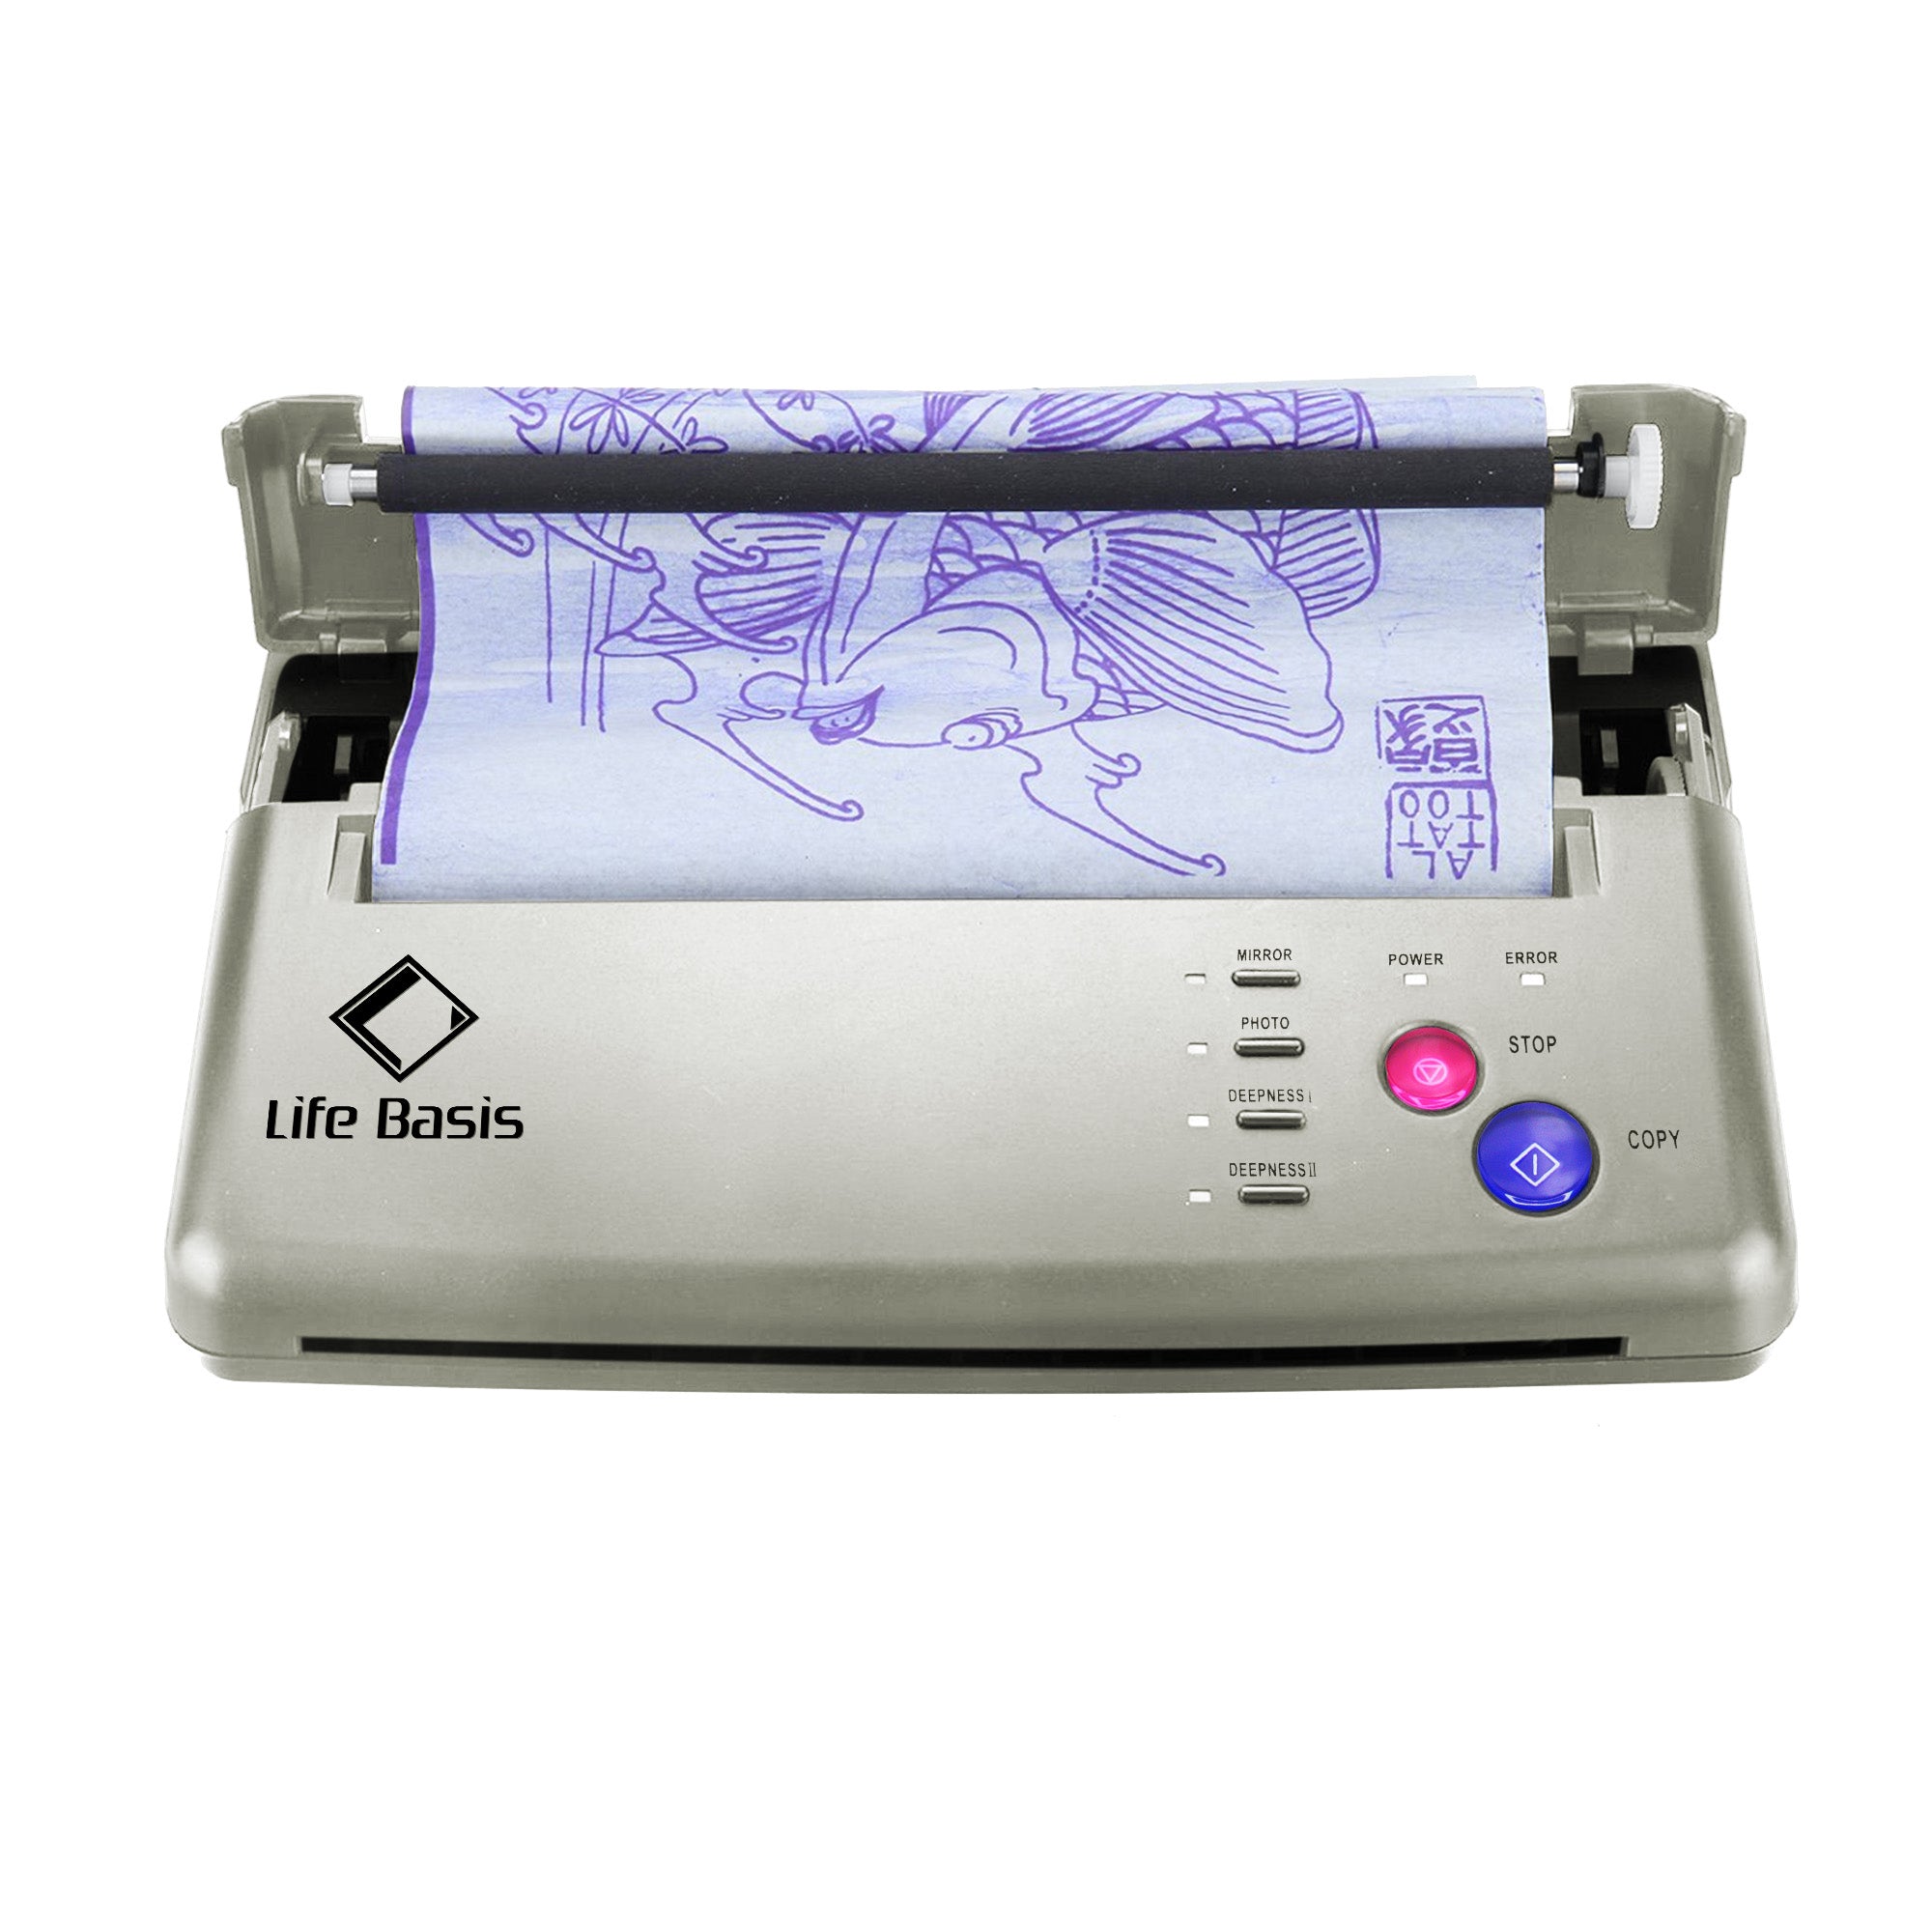 Mini Tattoo Transfer Stencil Machine Thermal Copier Printer for Tattoo  Artists | eBay